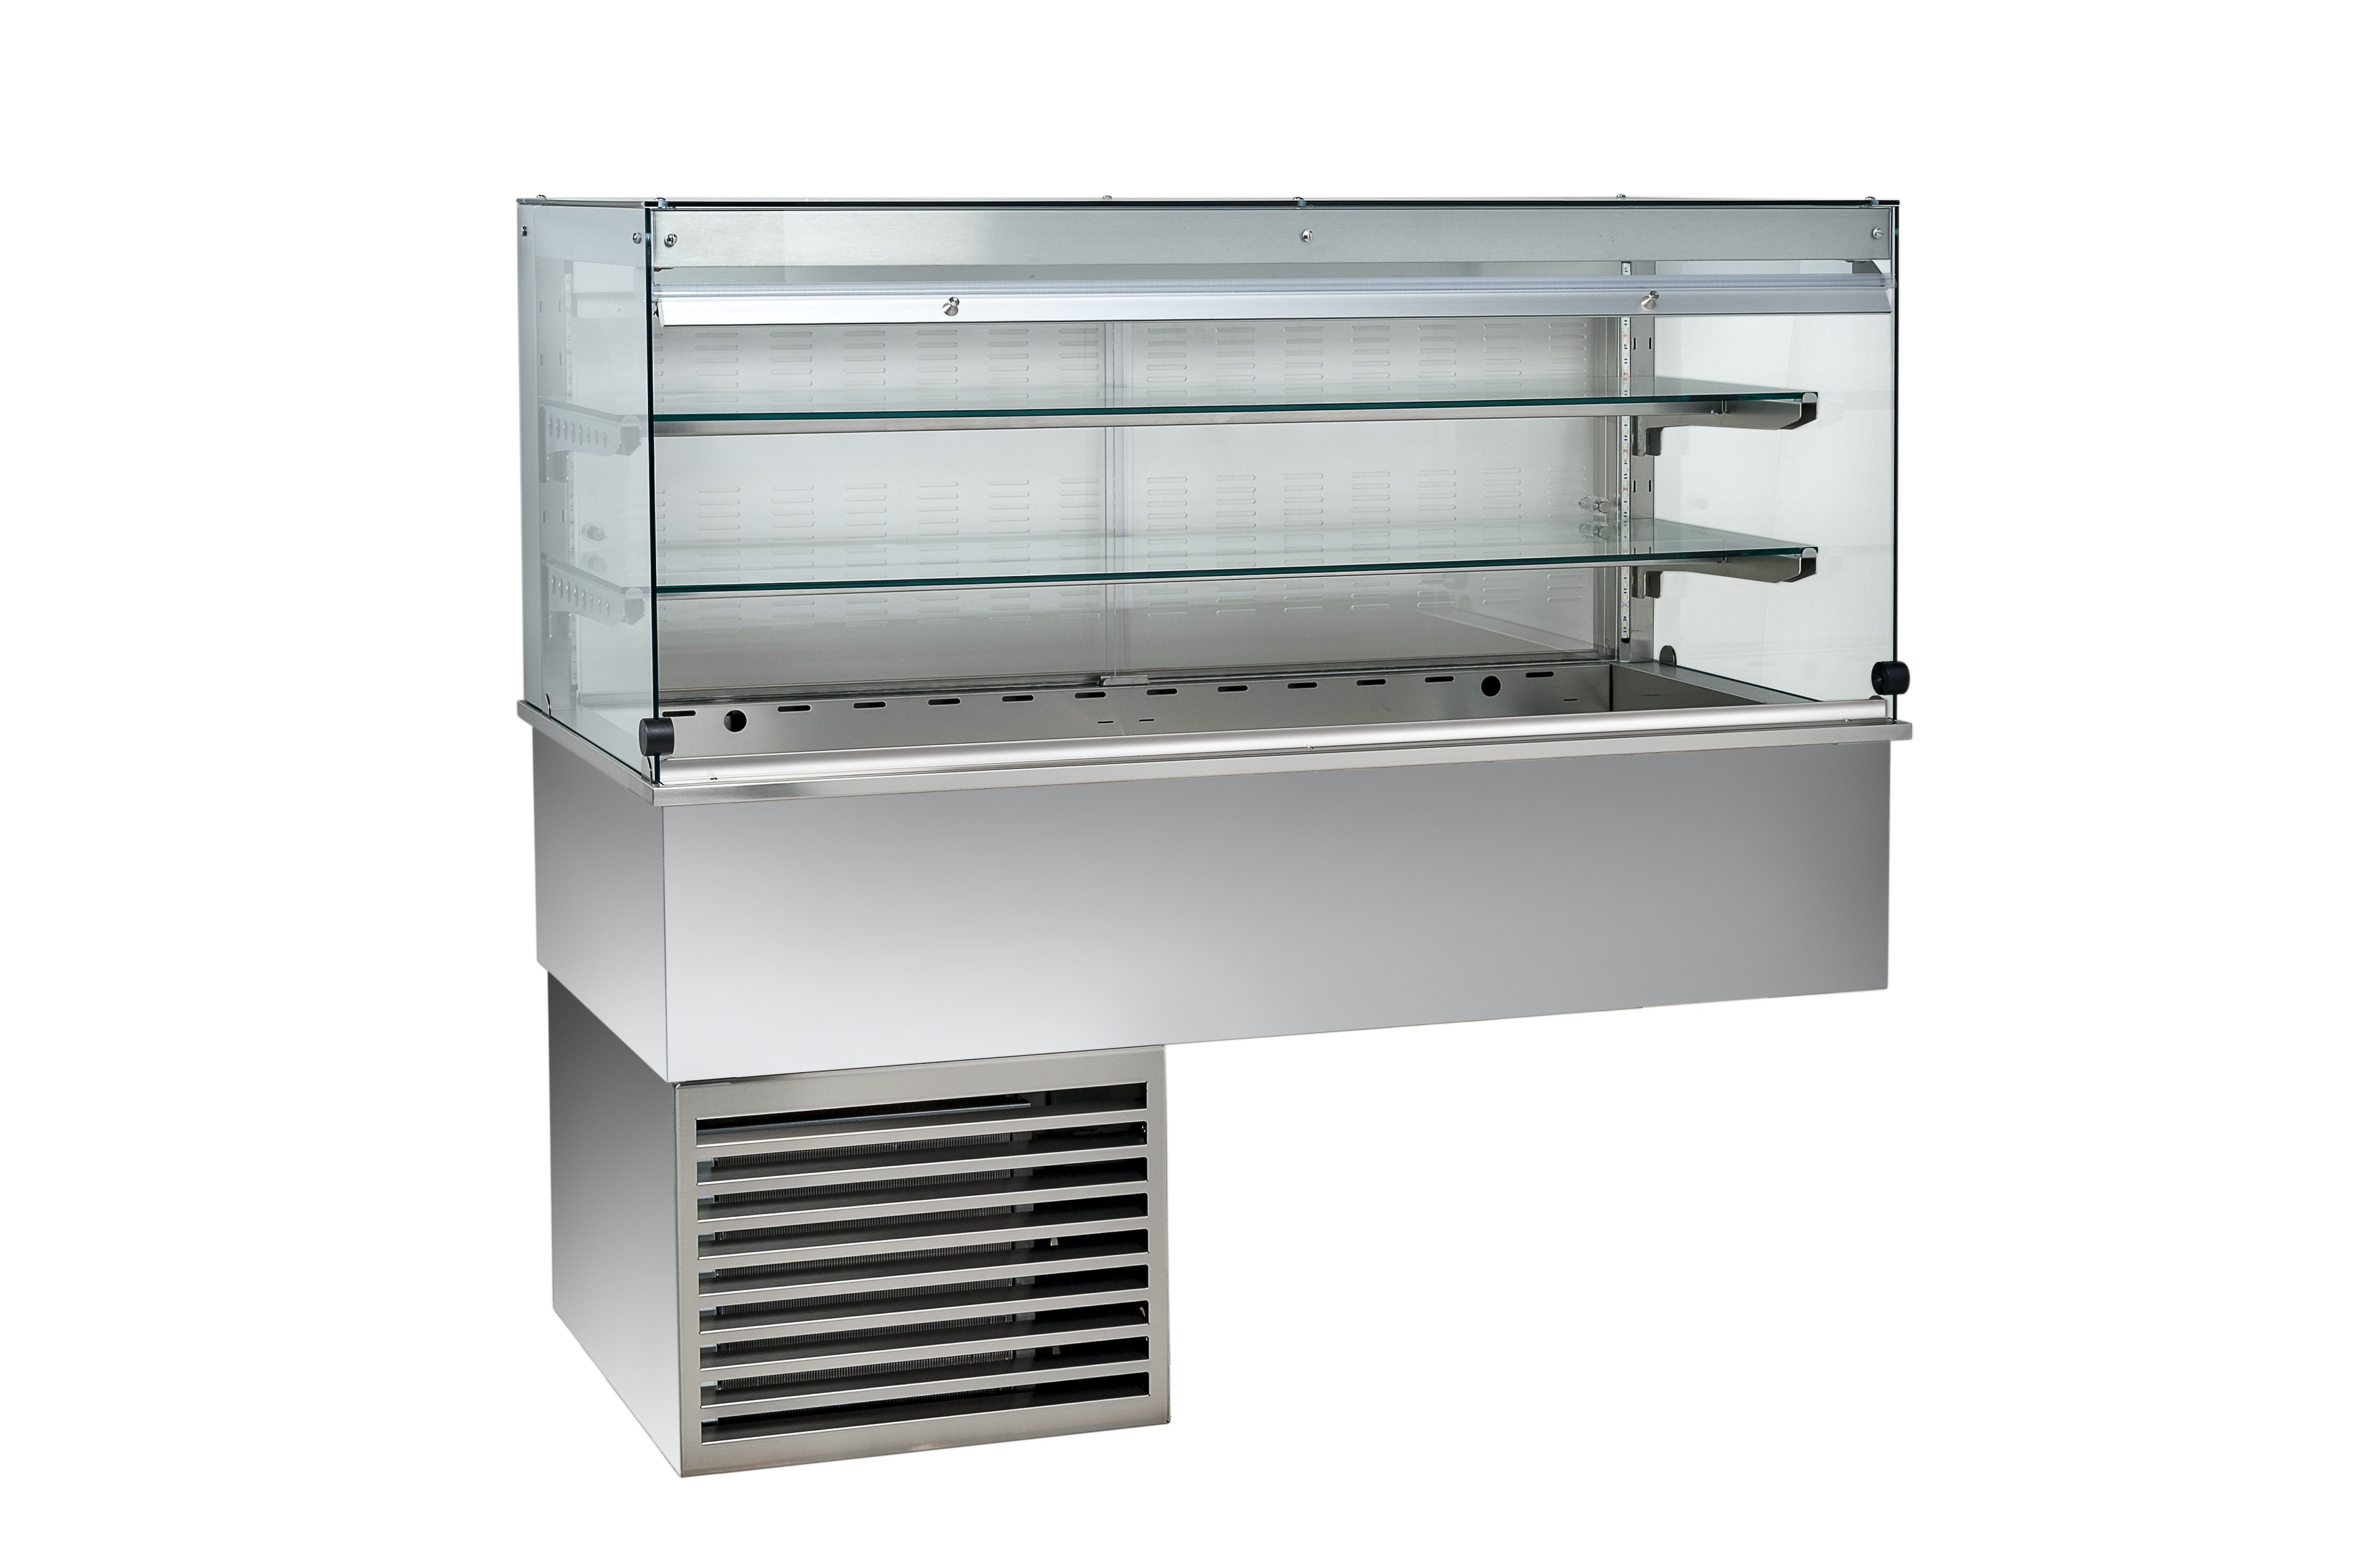 Kühlvitrine – Umluftkühlung – kubisch – 2 Ablagen – Kundenseitevorhang – B 1460 mm